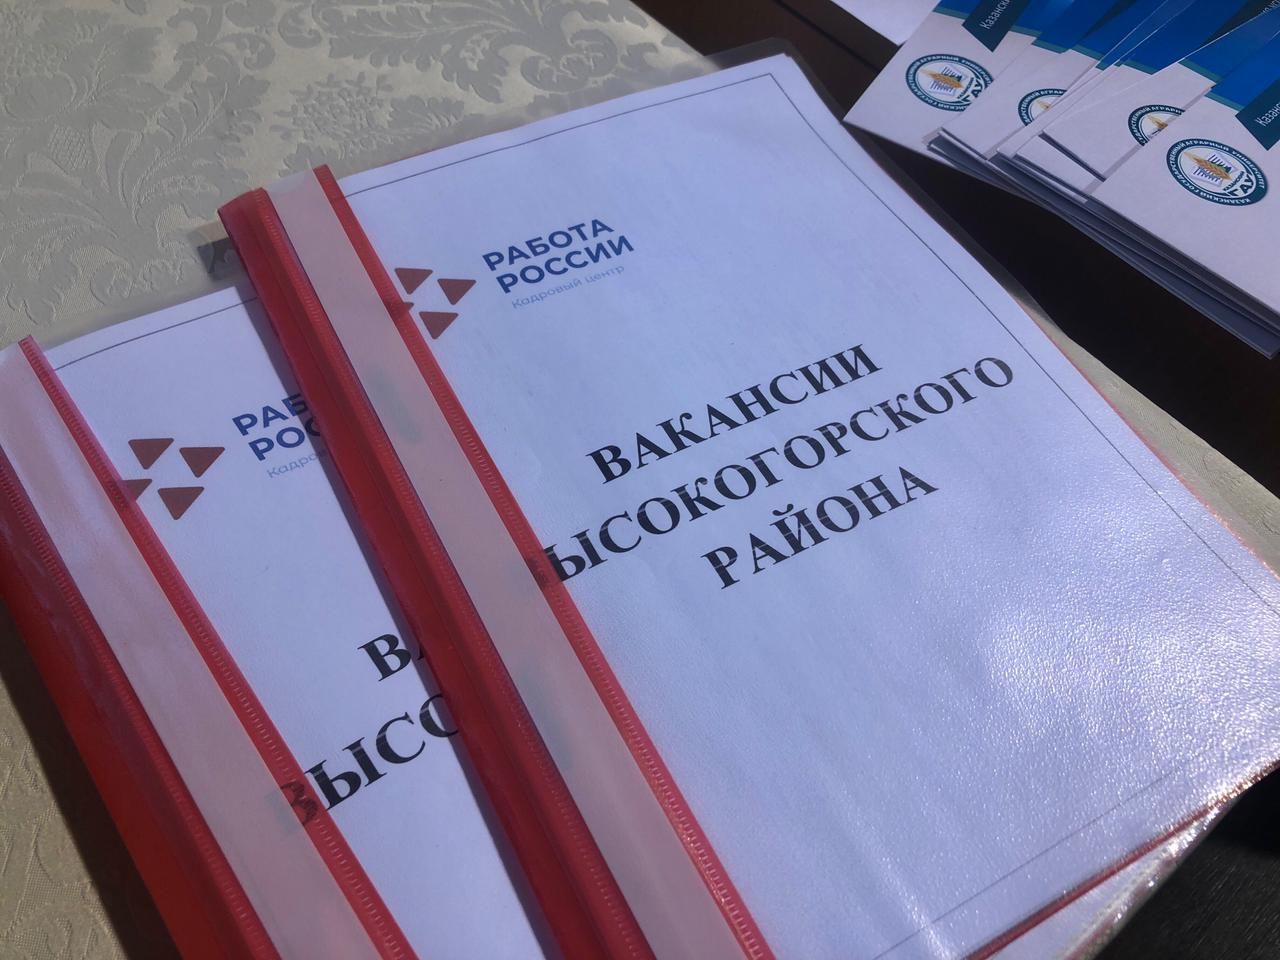 Более 700 вакансий работодатели предлагают жителям Высокогорского района